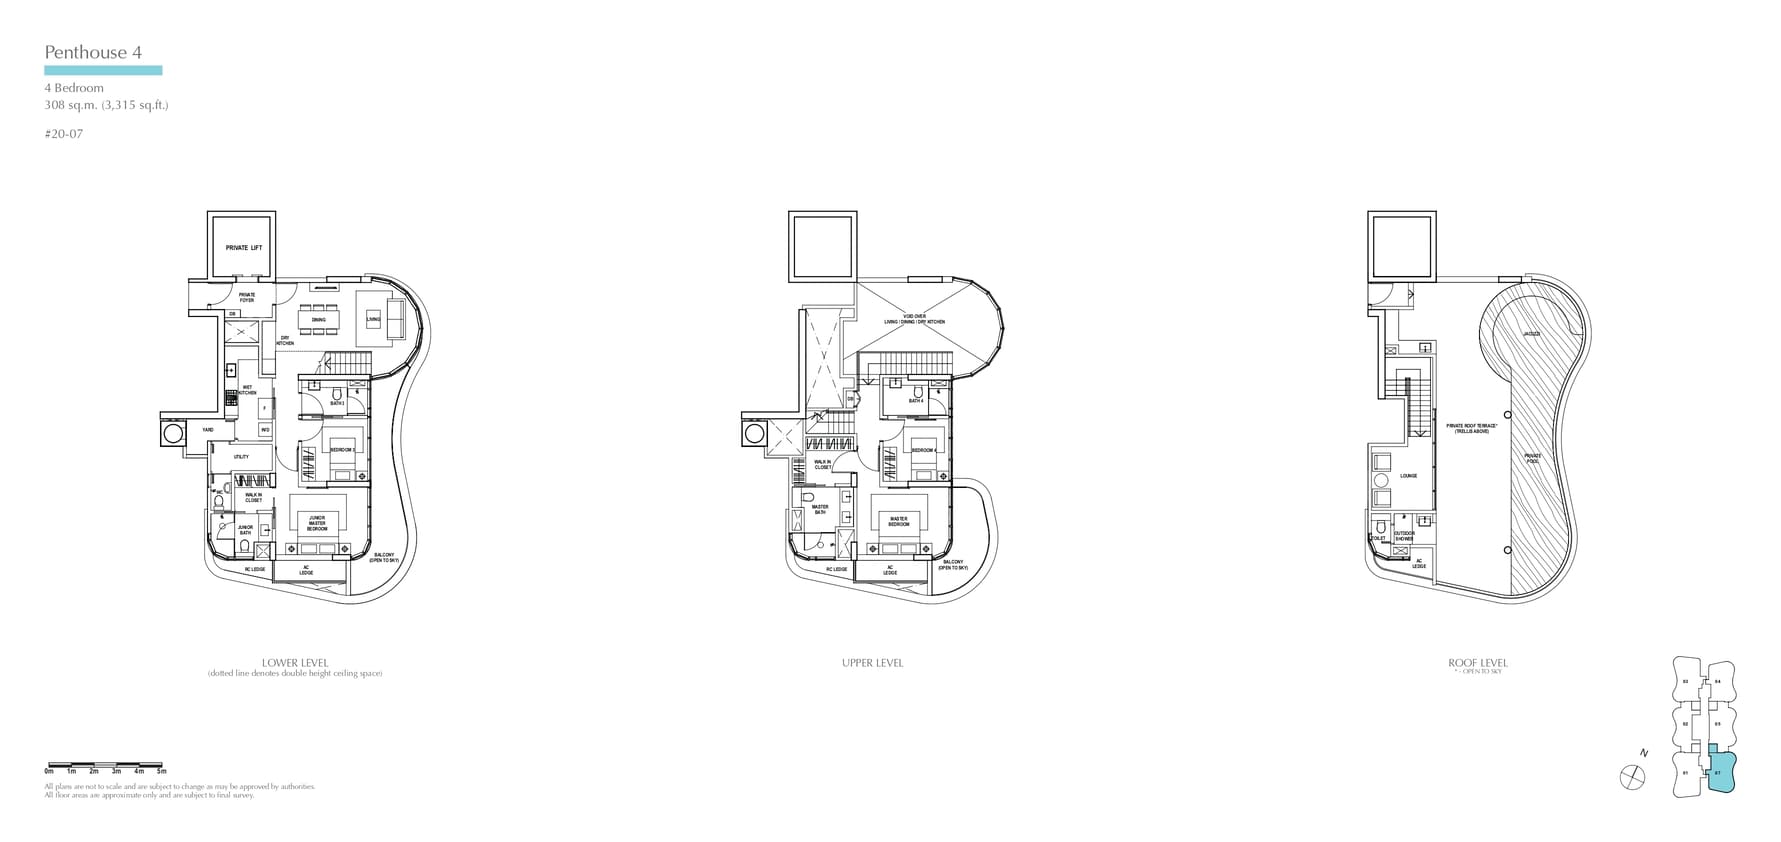 fp-amber-skye-penthouse-4-floor-plan.jpg